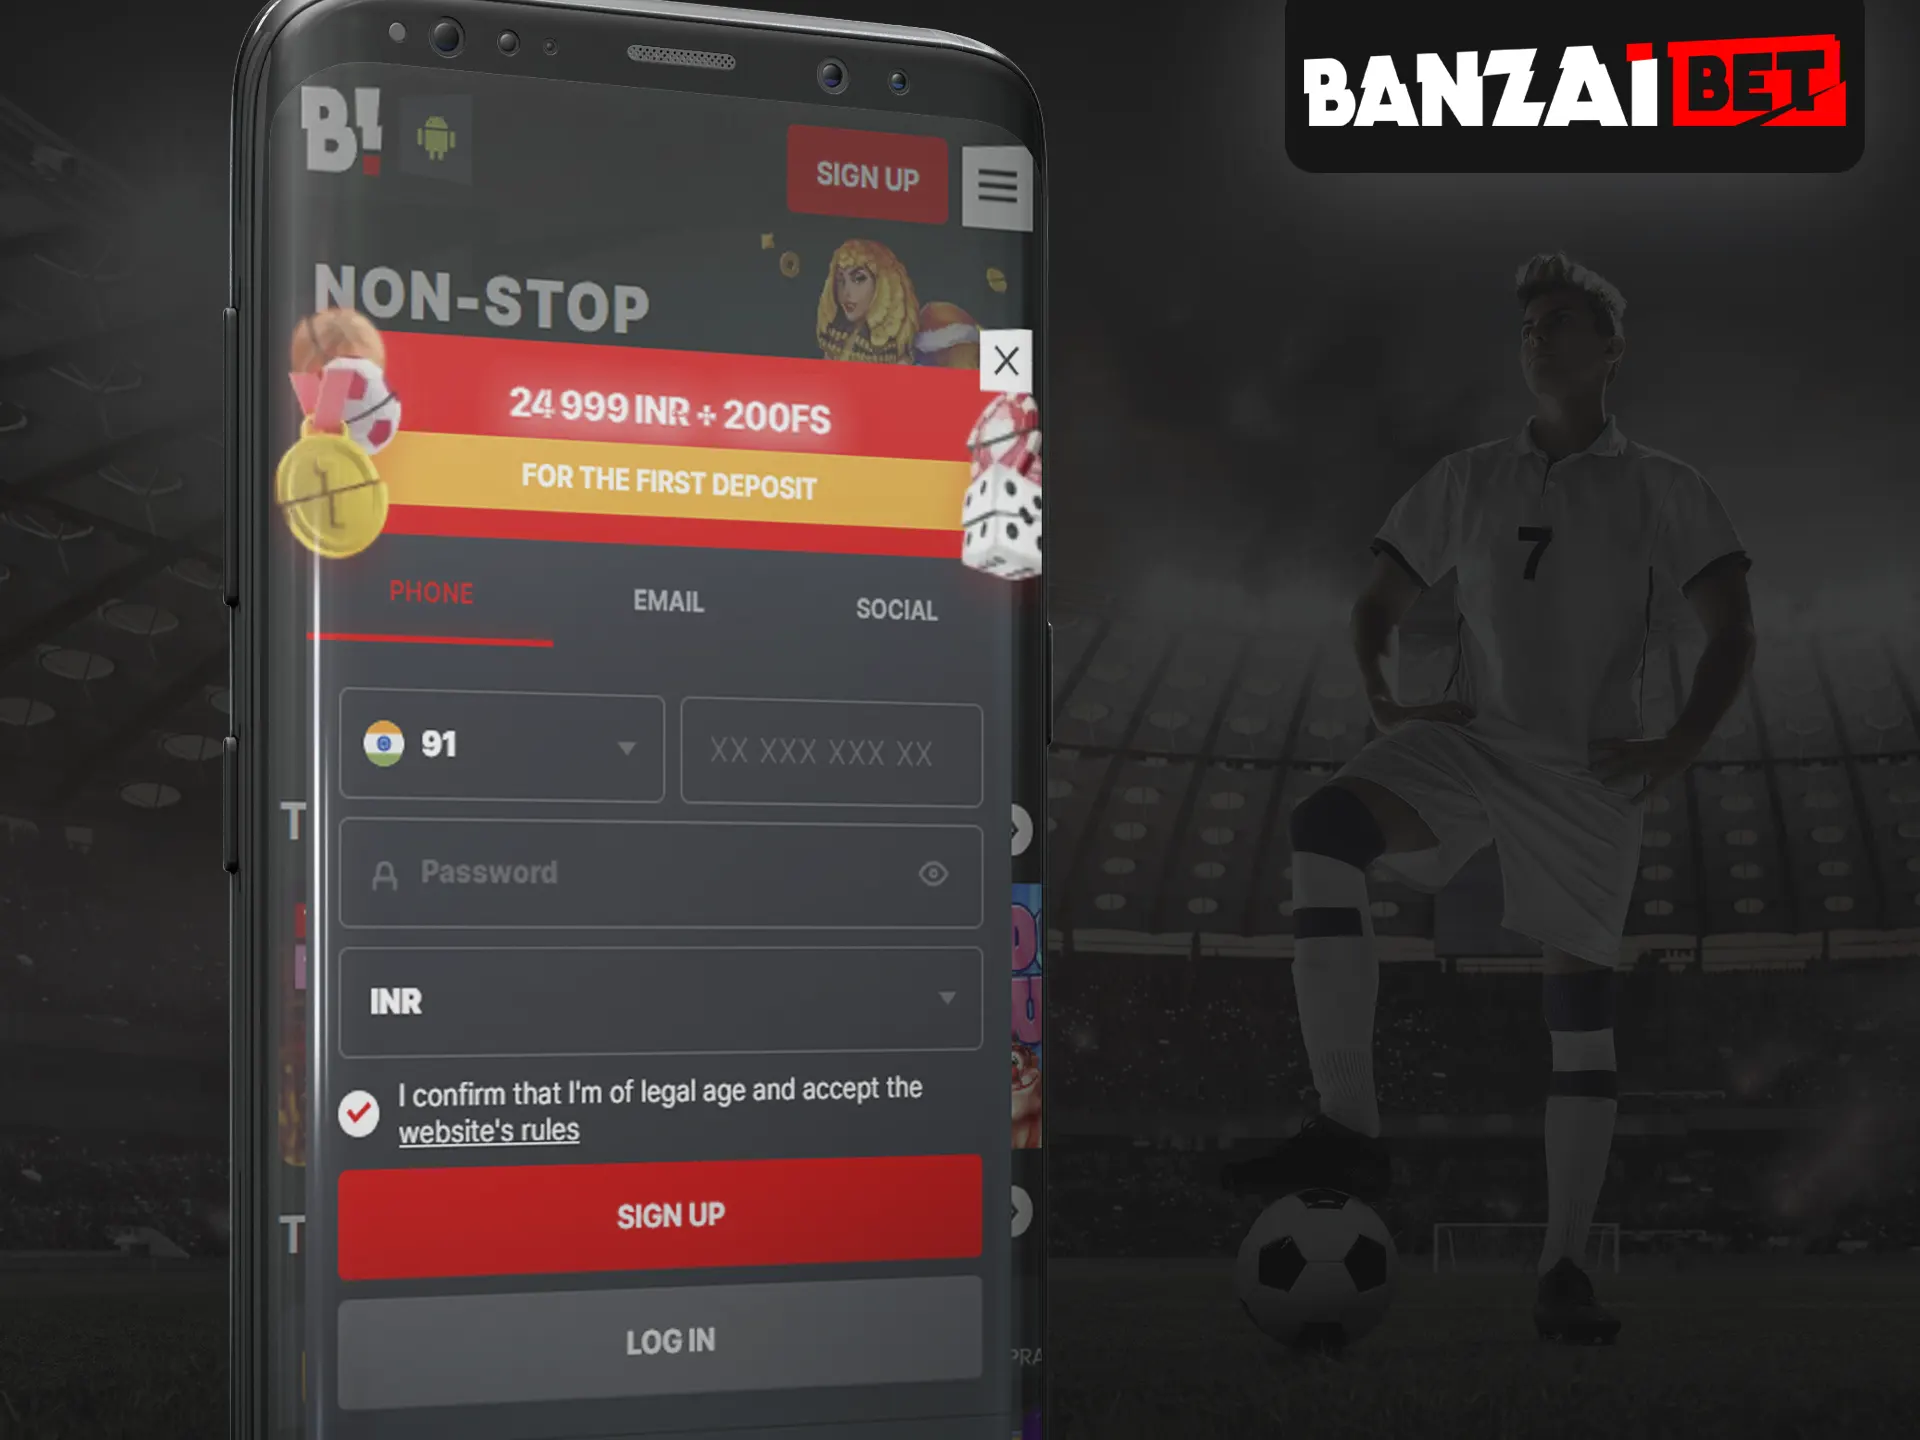 Register an account on Banzai Bet.